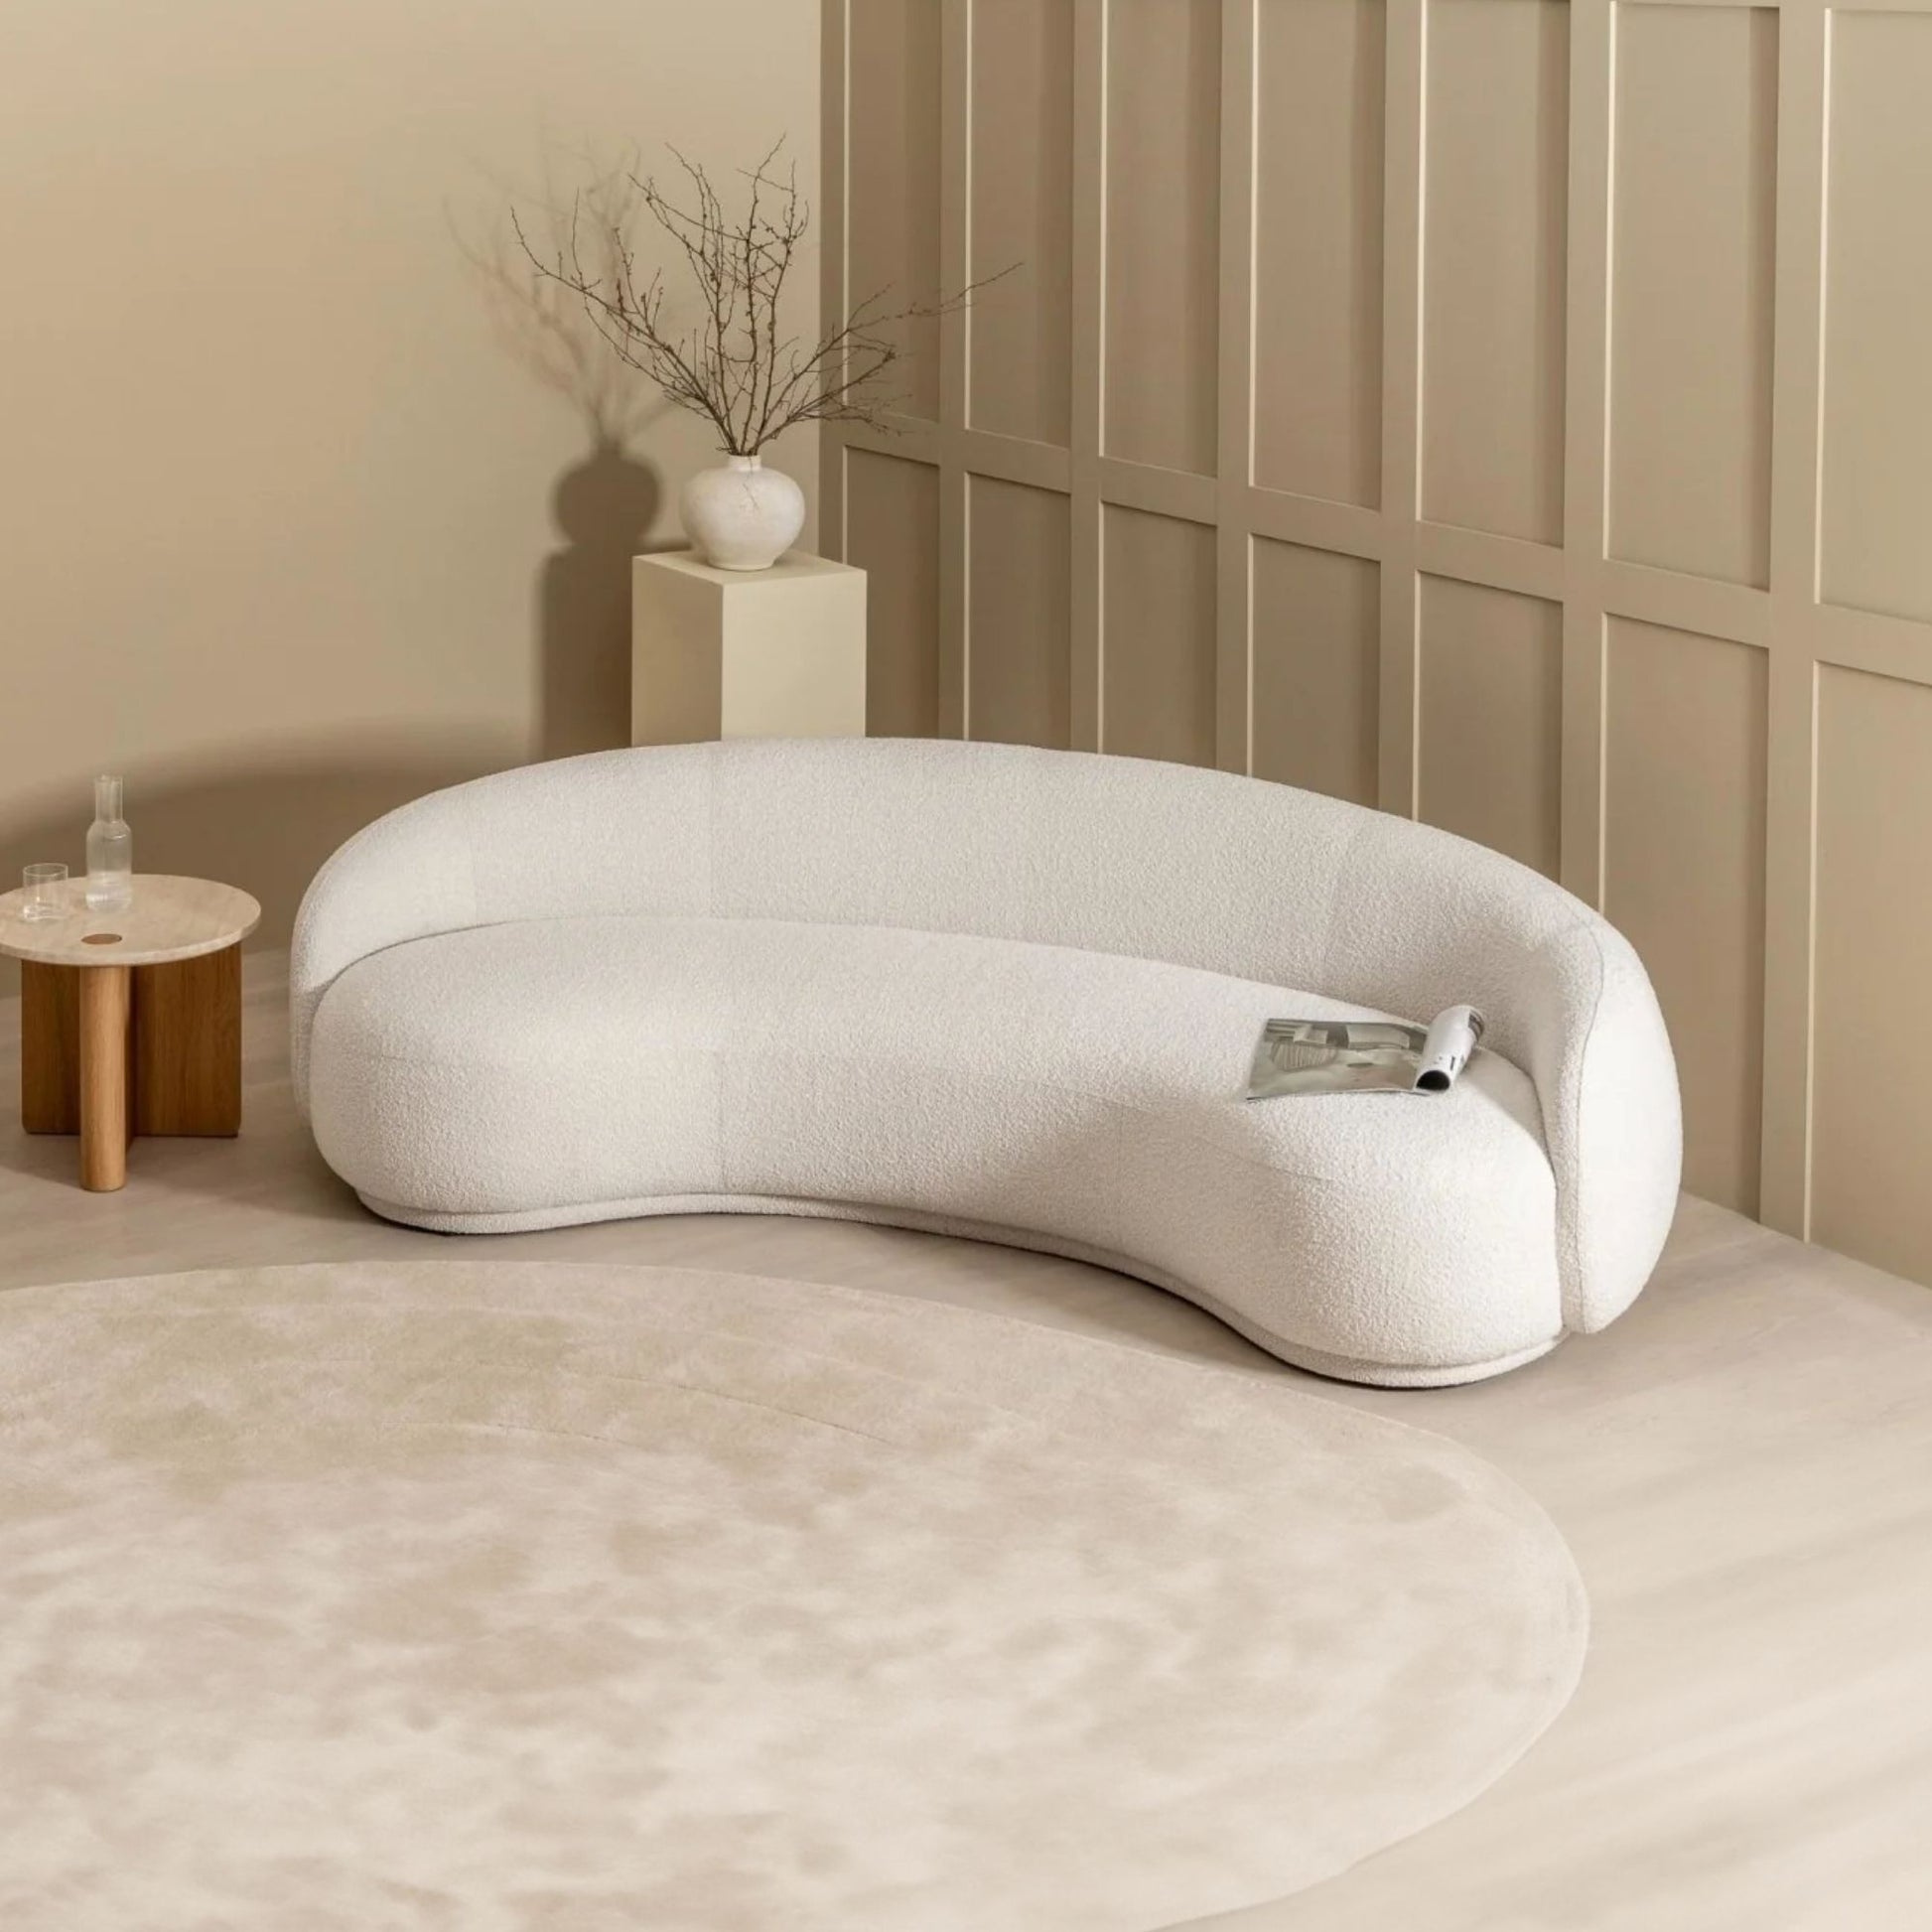 Cashew fabric sofa white